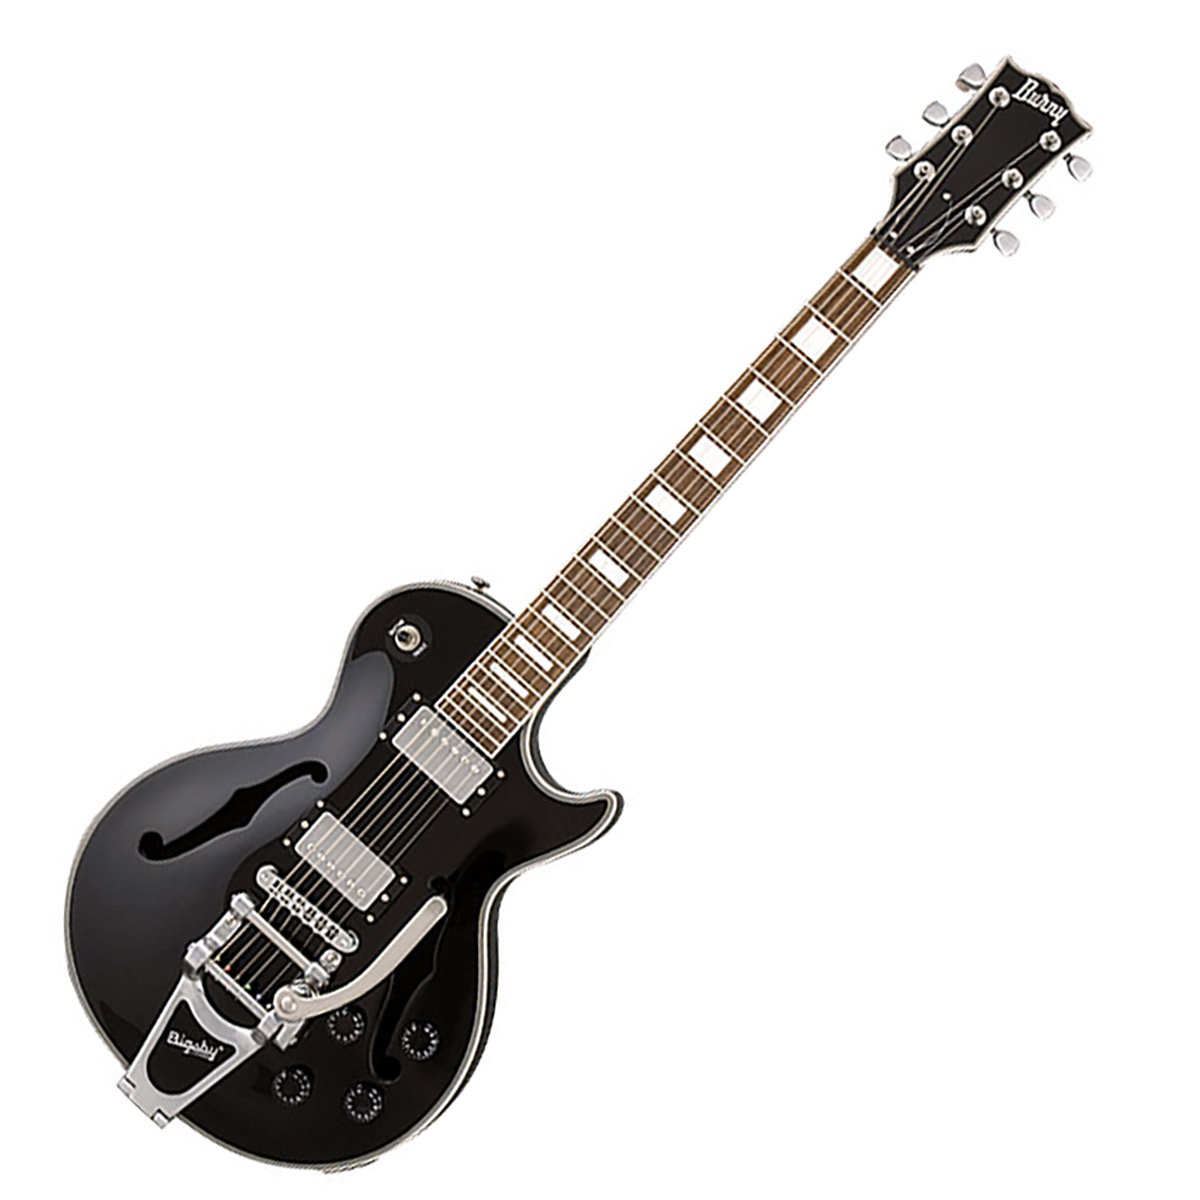 Burny BLC-90 BLK ブラック エレキギター セミホロウ レスポール